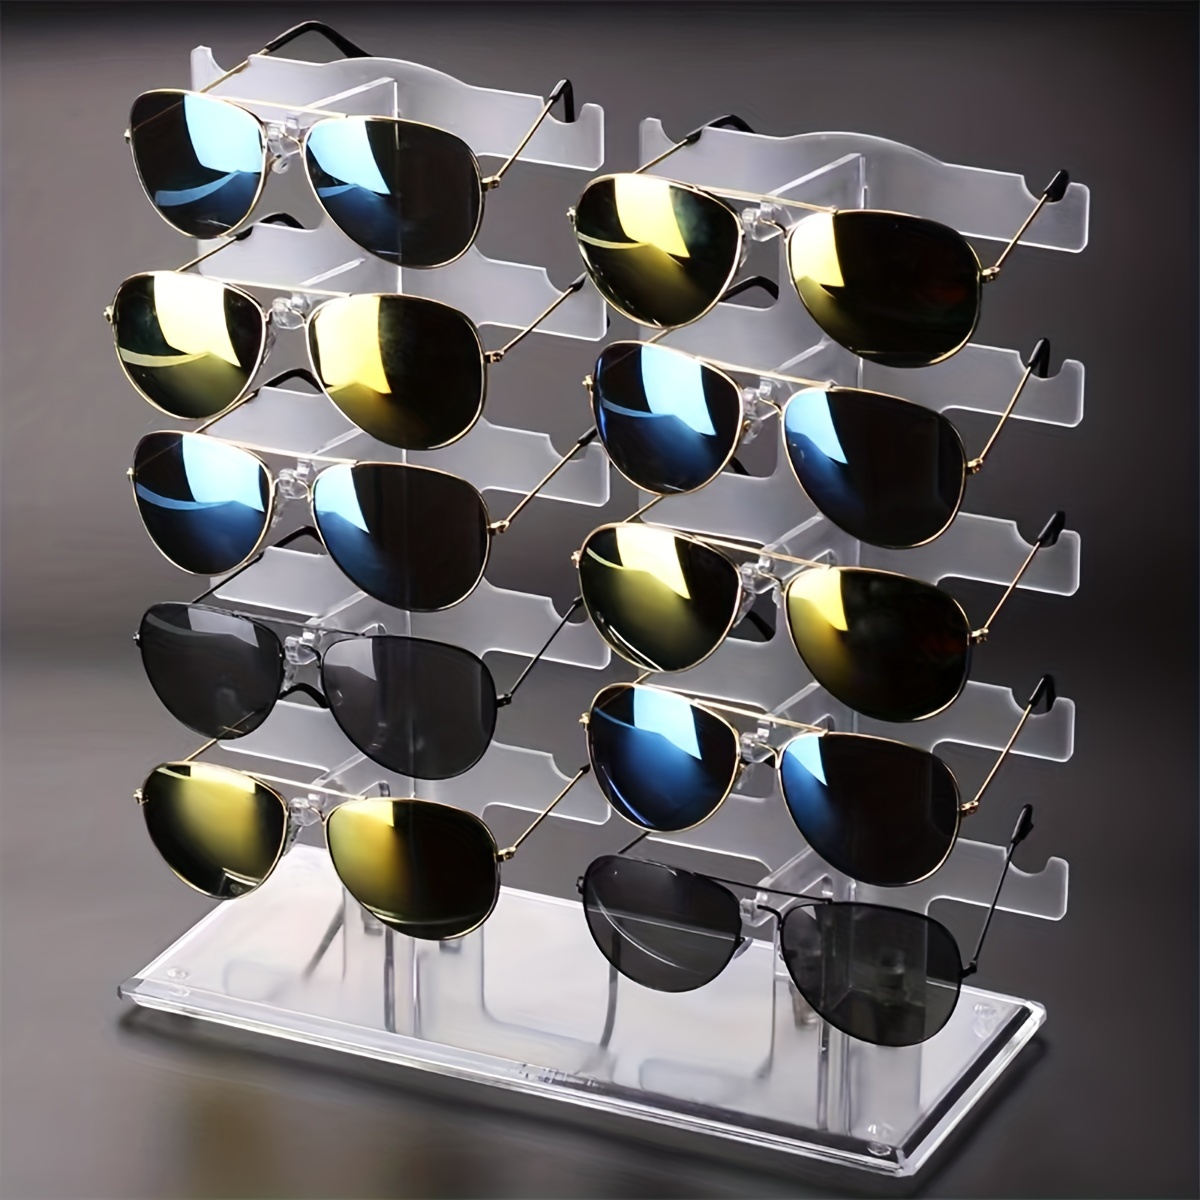 Sonnenbrillen Ablage - Kostenloser Versand Für Neue Benutzer - Temu Germany